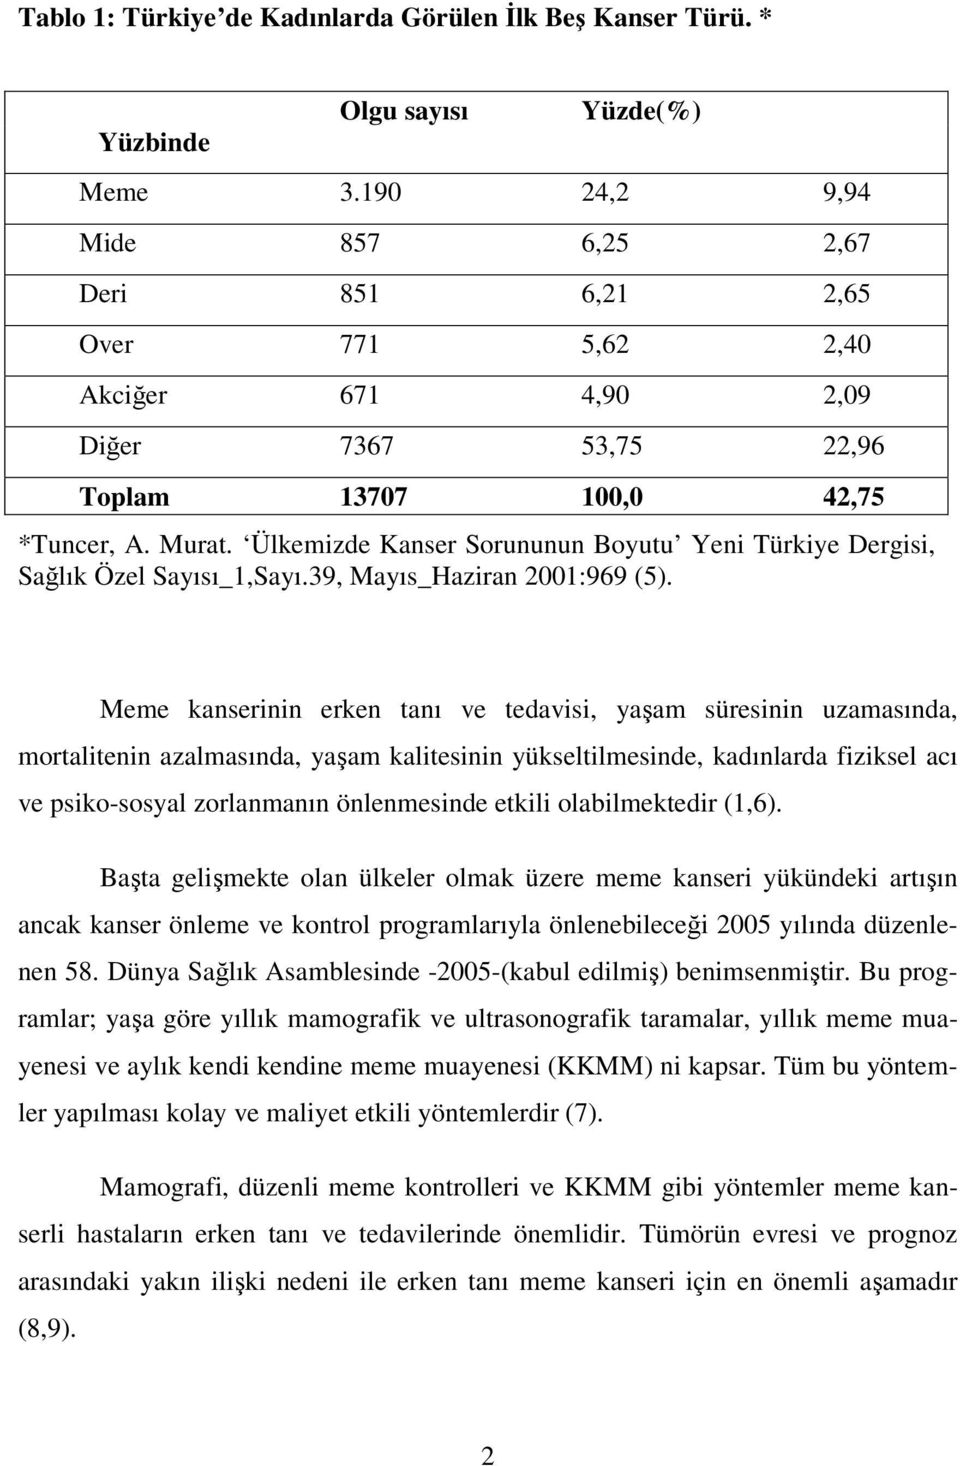 Ülkemizde Kanser Sorununun Boyutu Yeni Türkiye Dergisi, Sağlık Özel Sayısı_1,Sayı.39, Mayıs_Haziran 2001:969 (5).